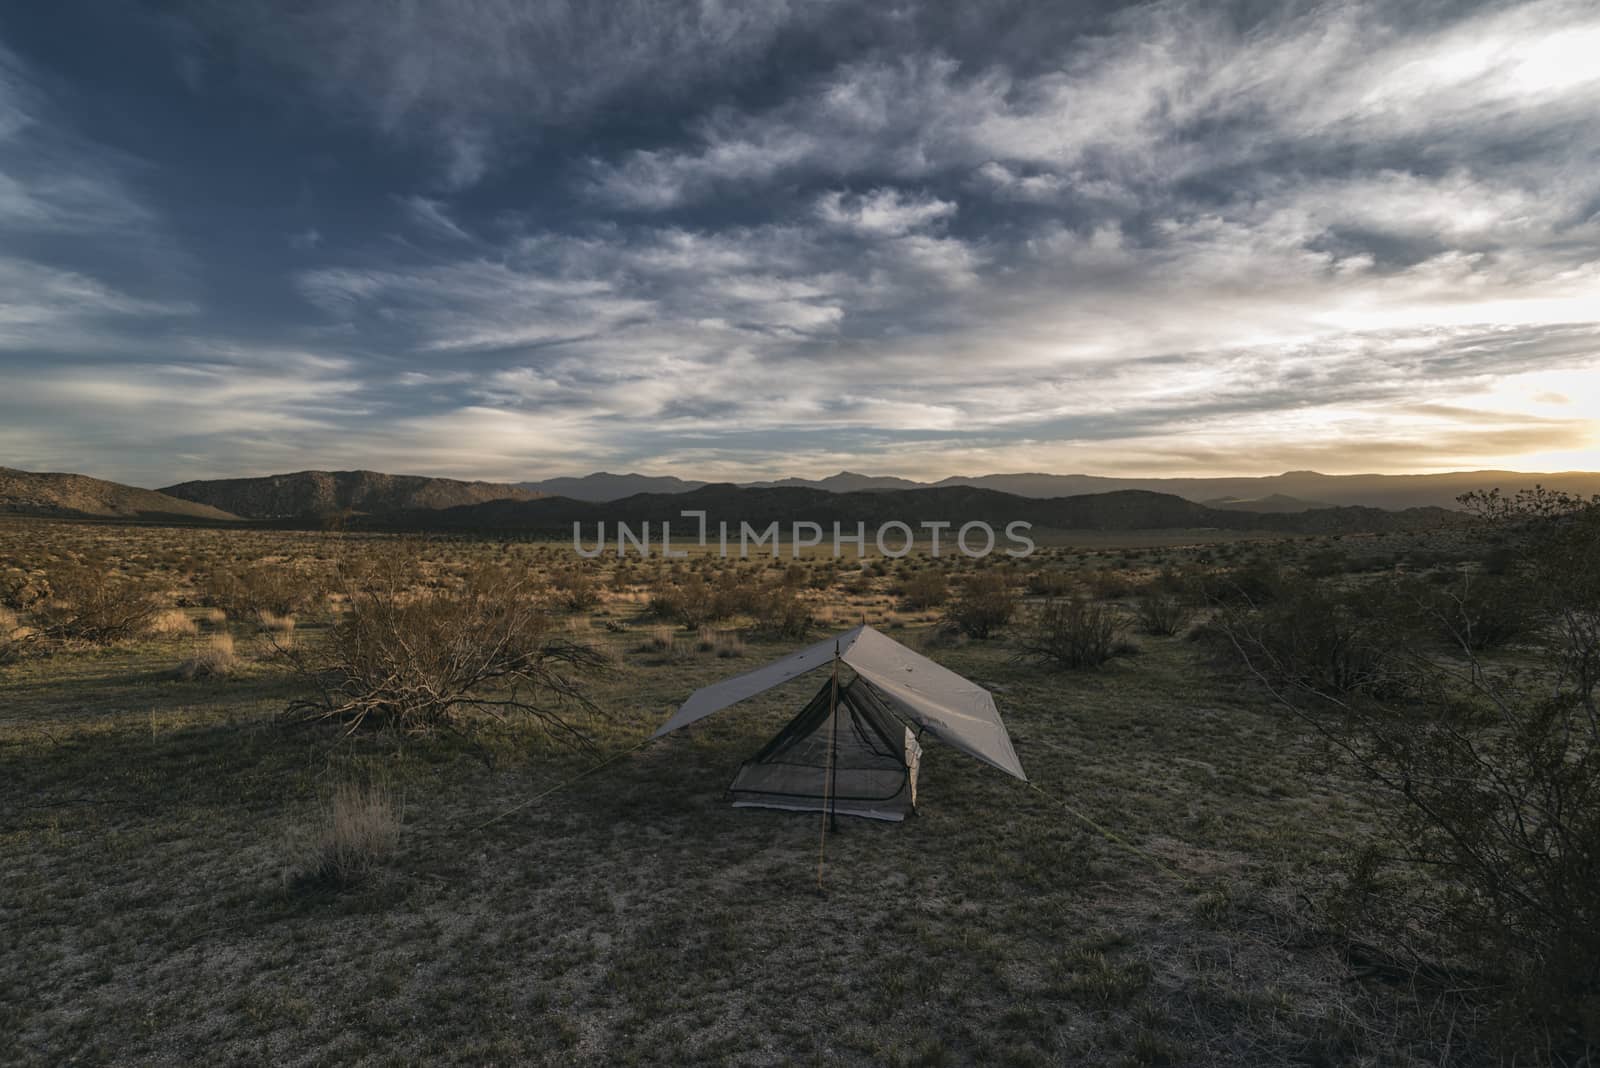 Camping in the Anza-Borrego Desert, California, USA